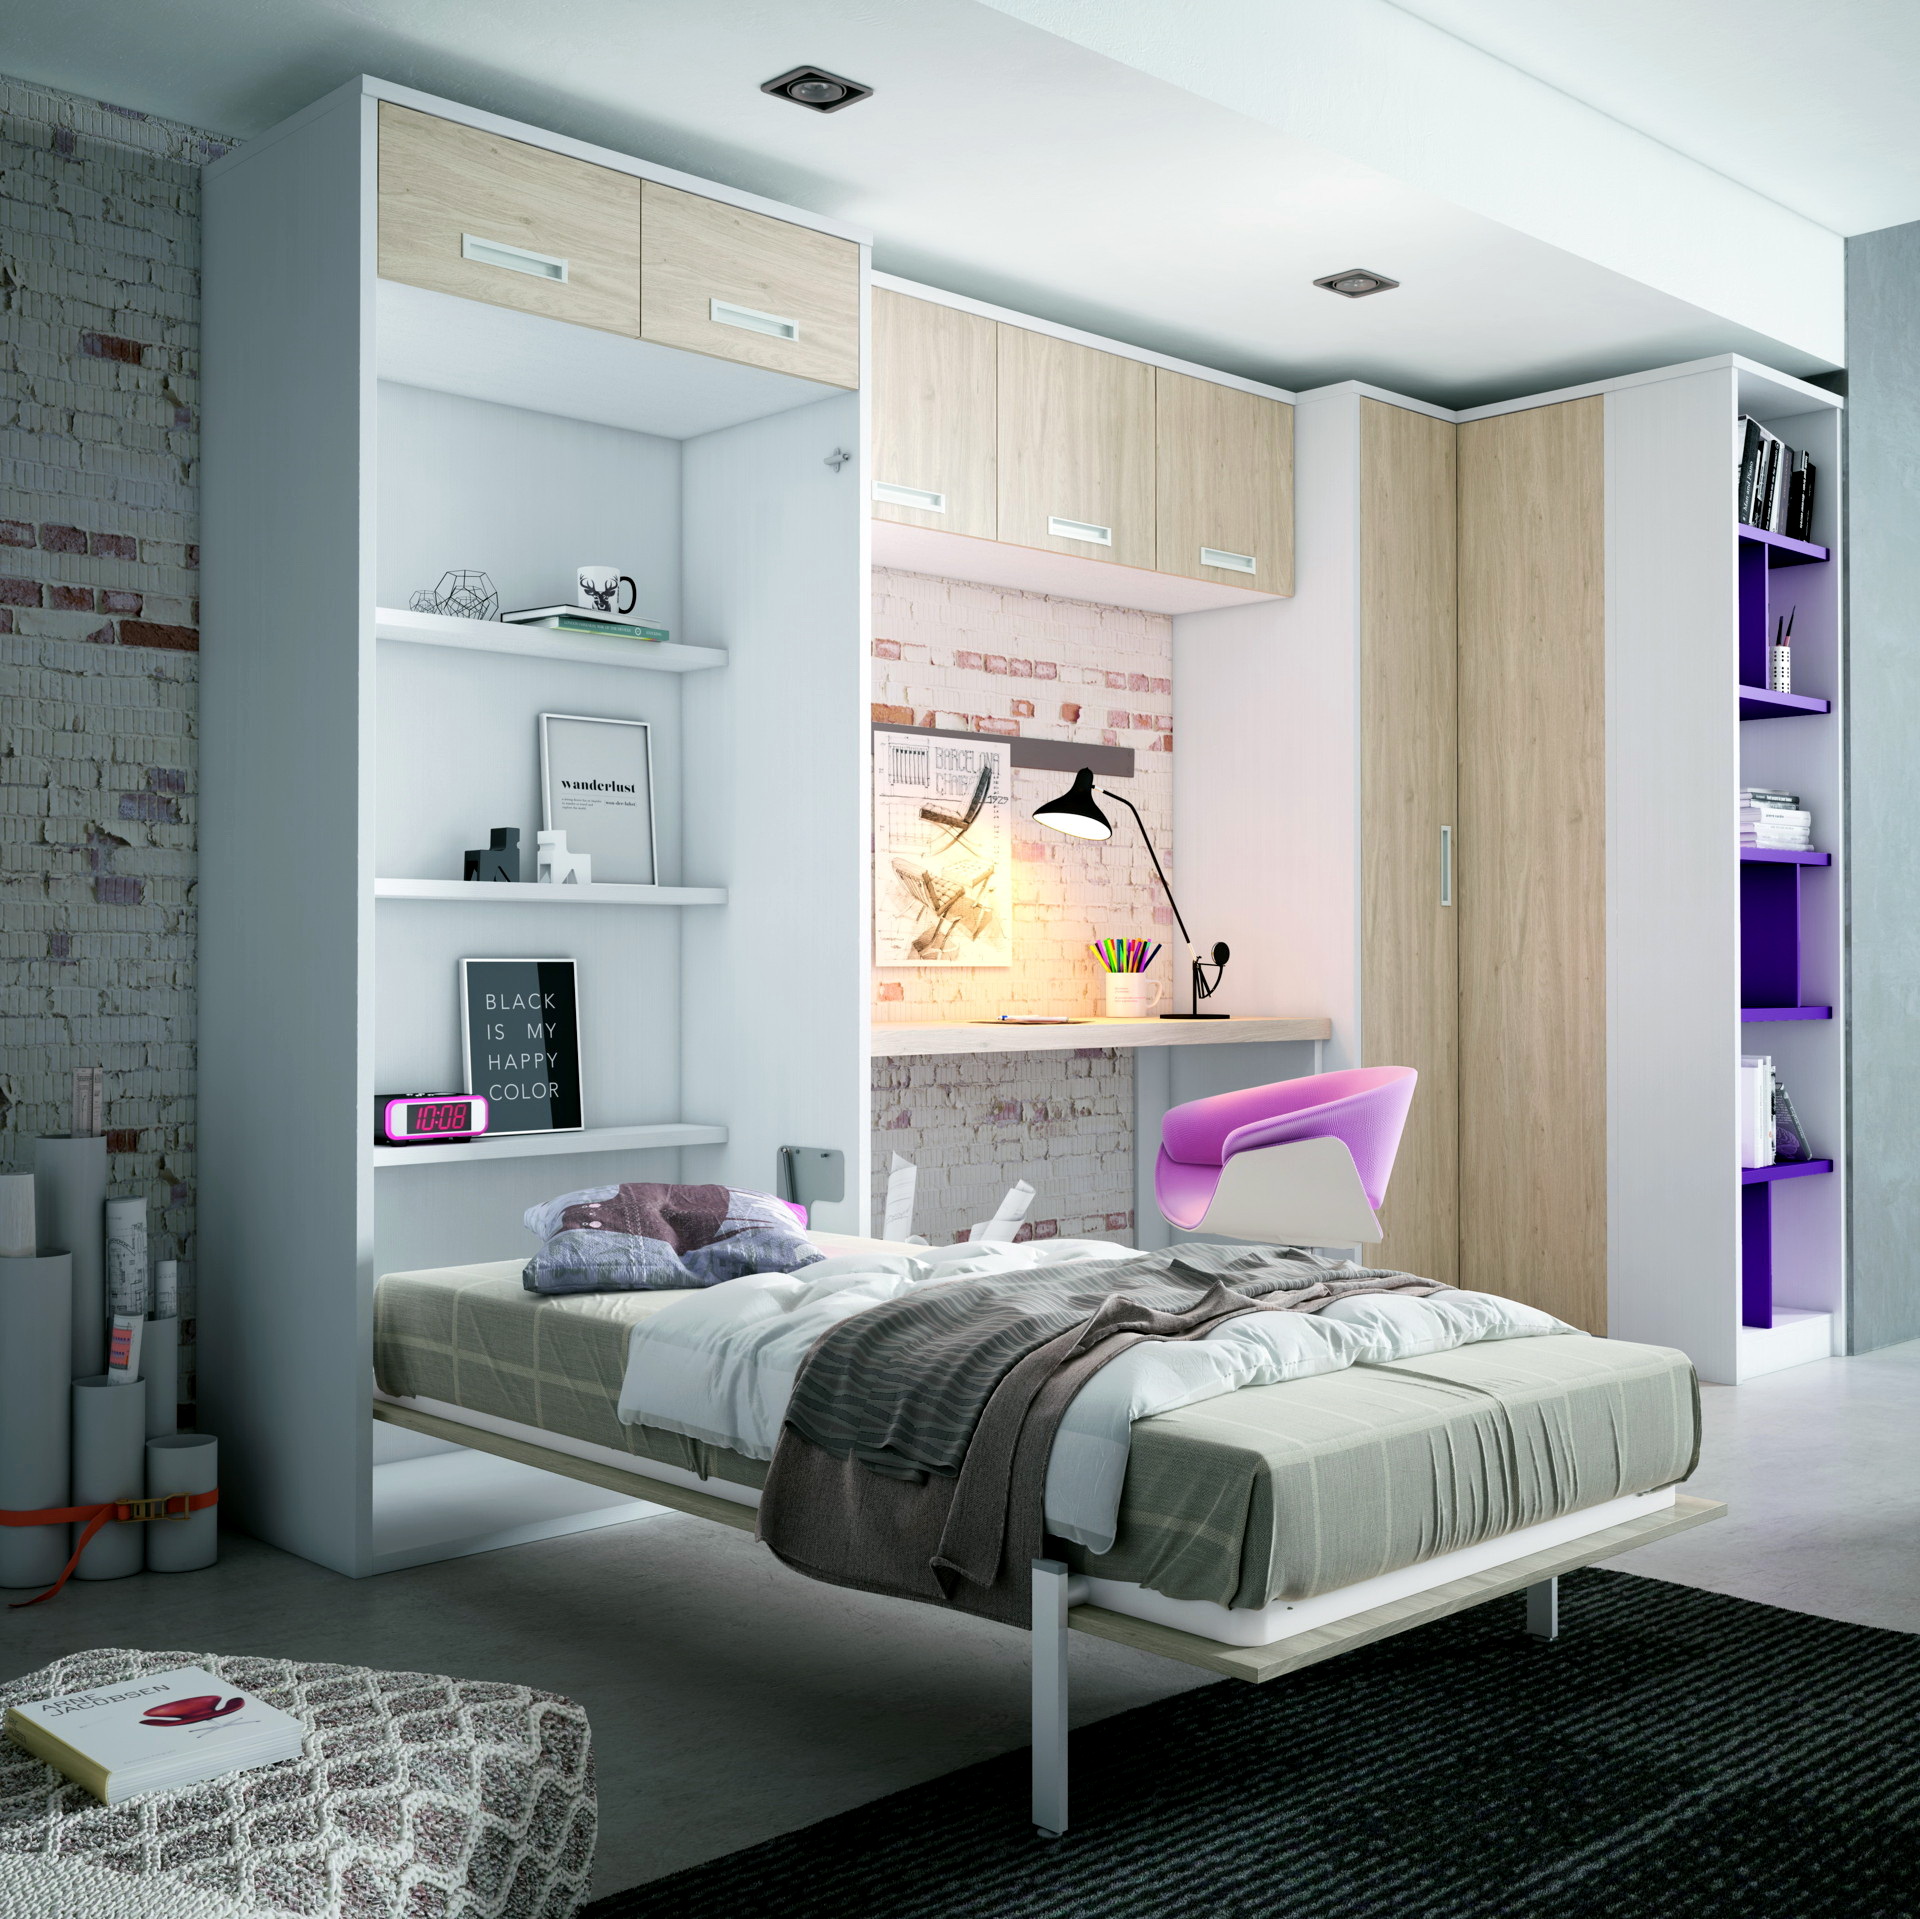 NEW AVANT3 dormitorios infantiles by Yaboni 057.2 CAMA ABATIBLE VERTICAL de venta en Muebles ANTOÑÁN León